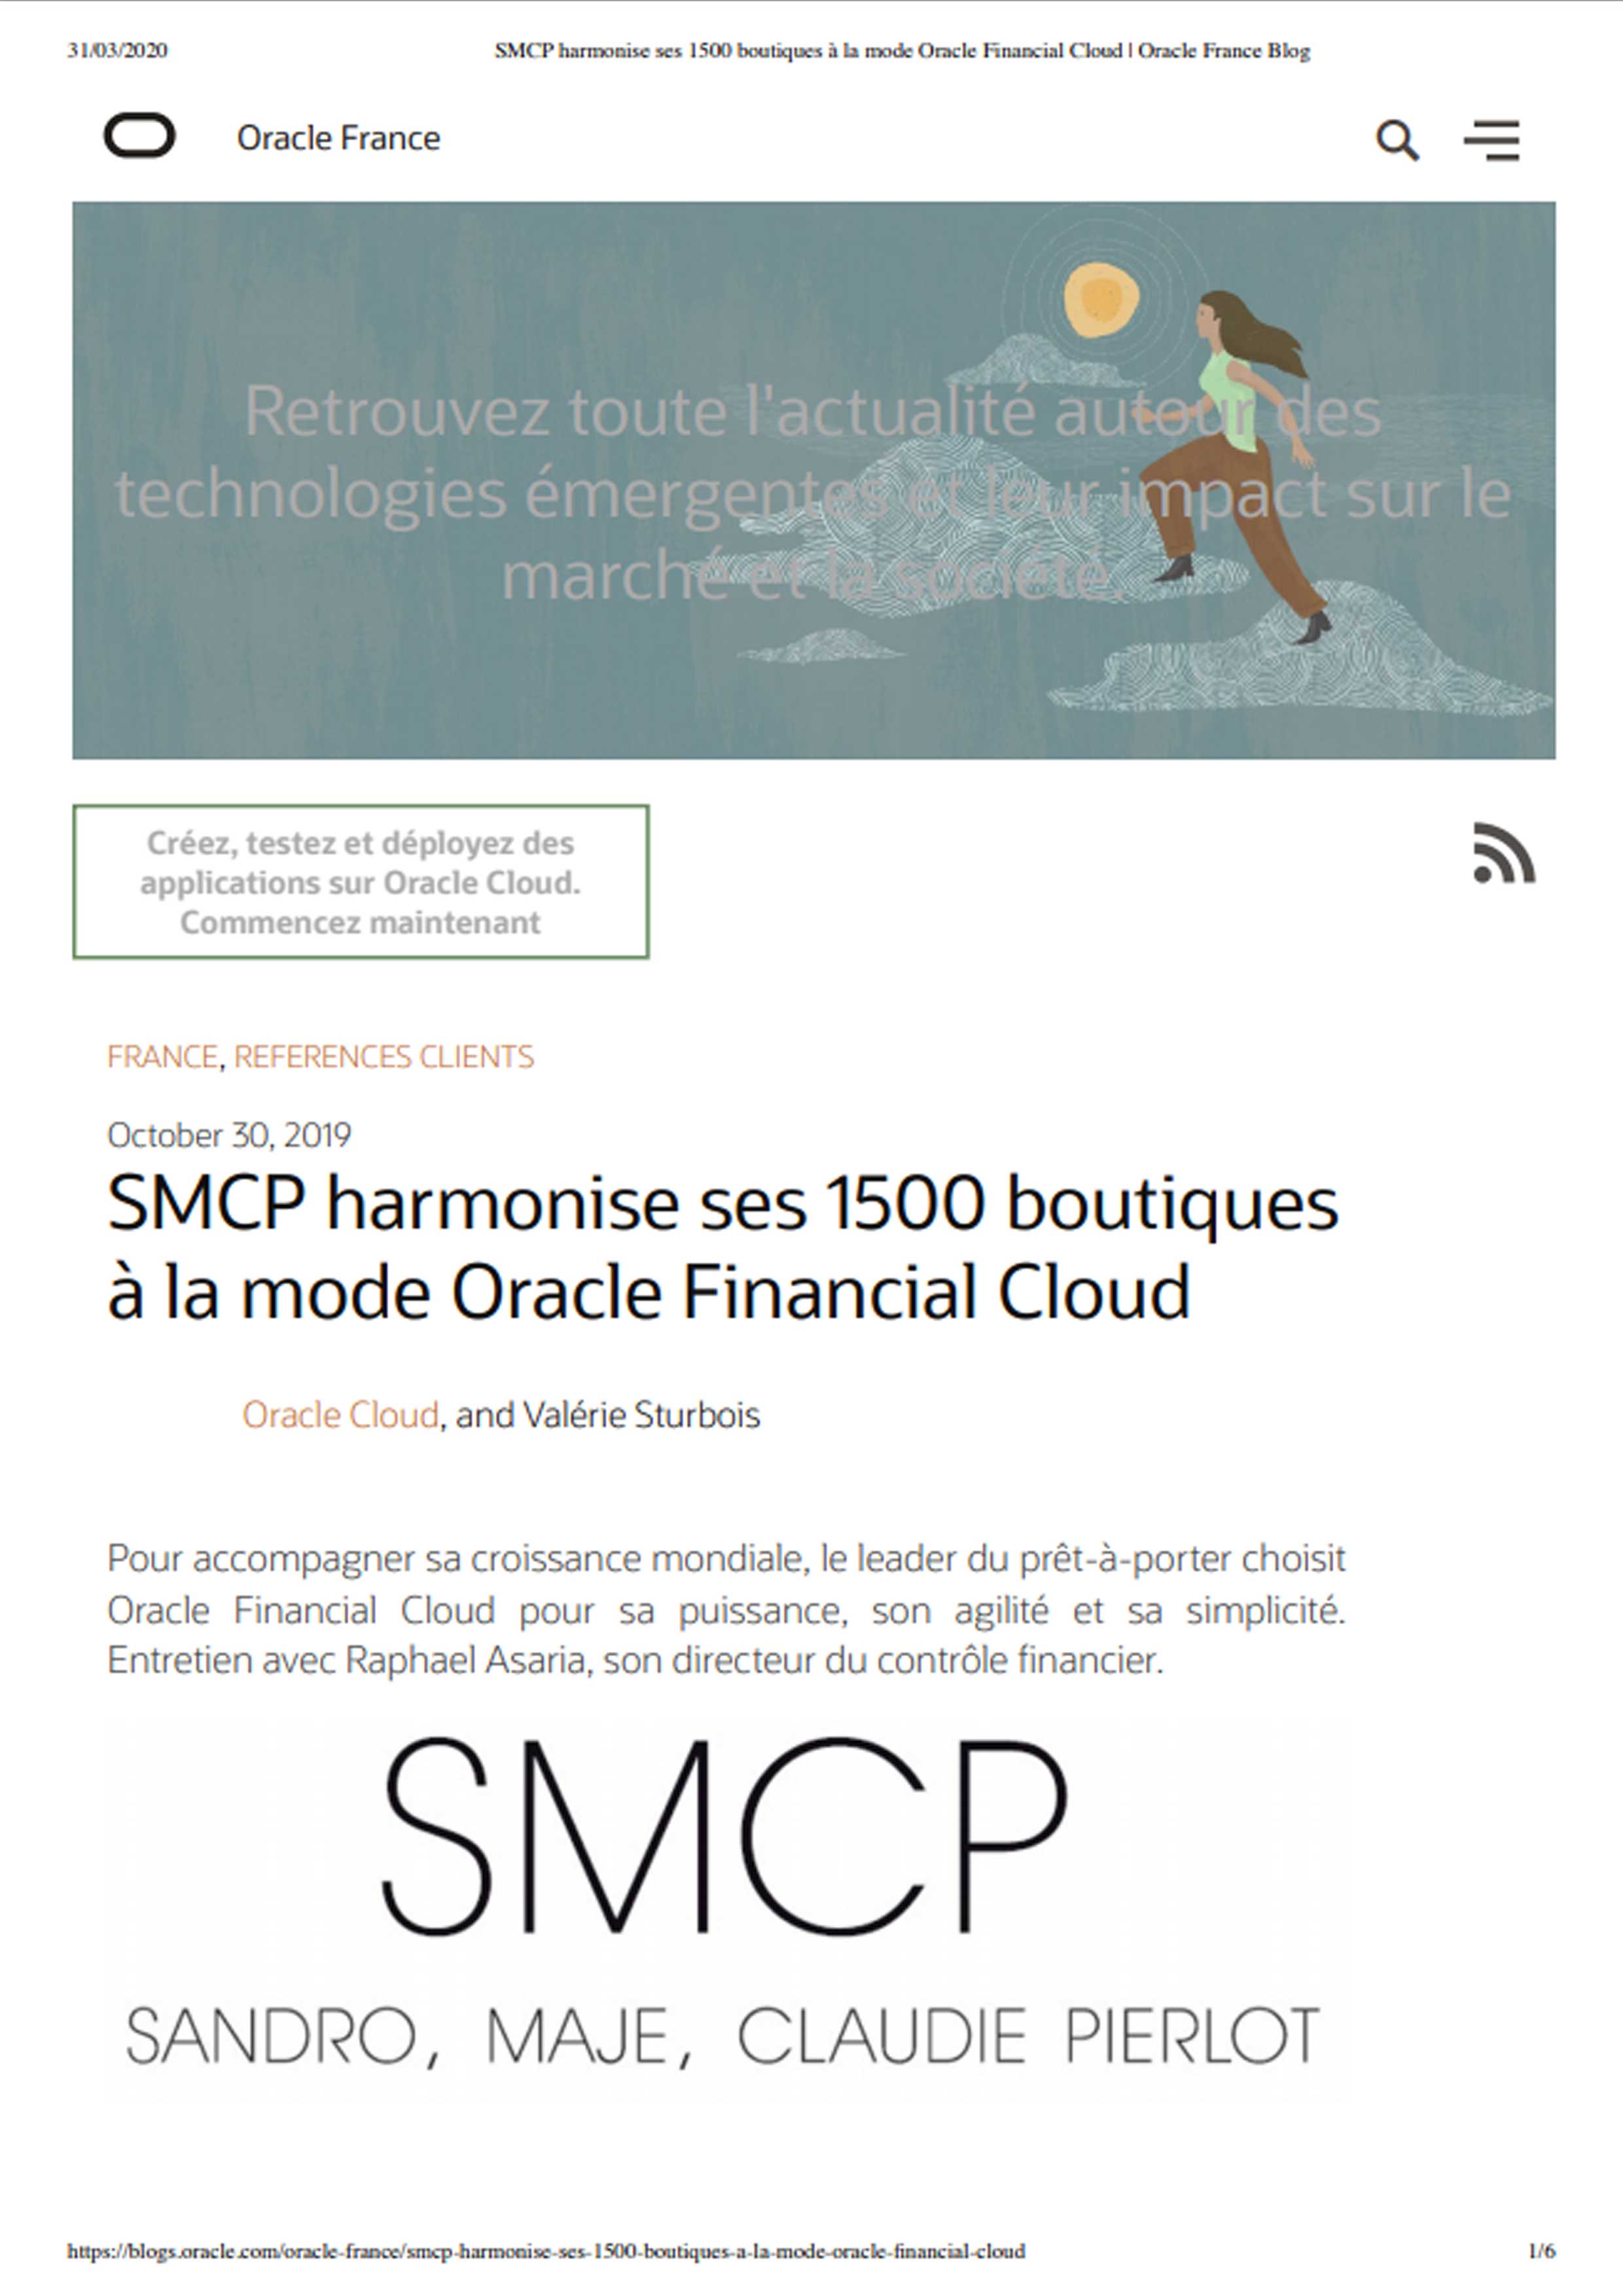 smcp-harmonise-ses-1500-boutiques-a-la-mode-oracle-financial-cloud